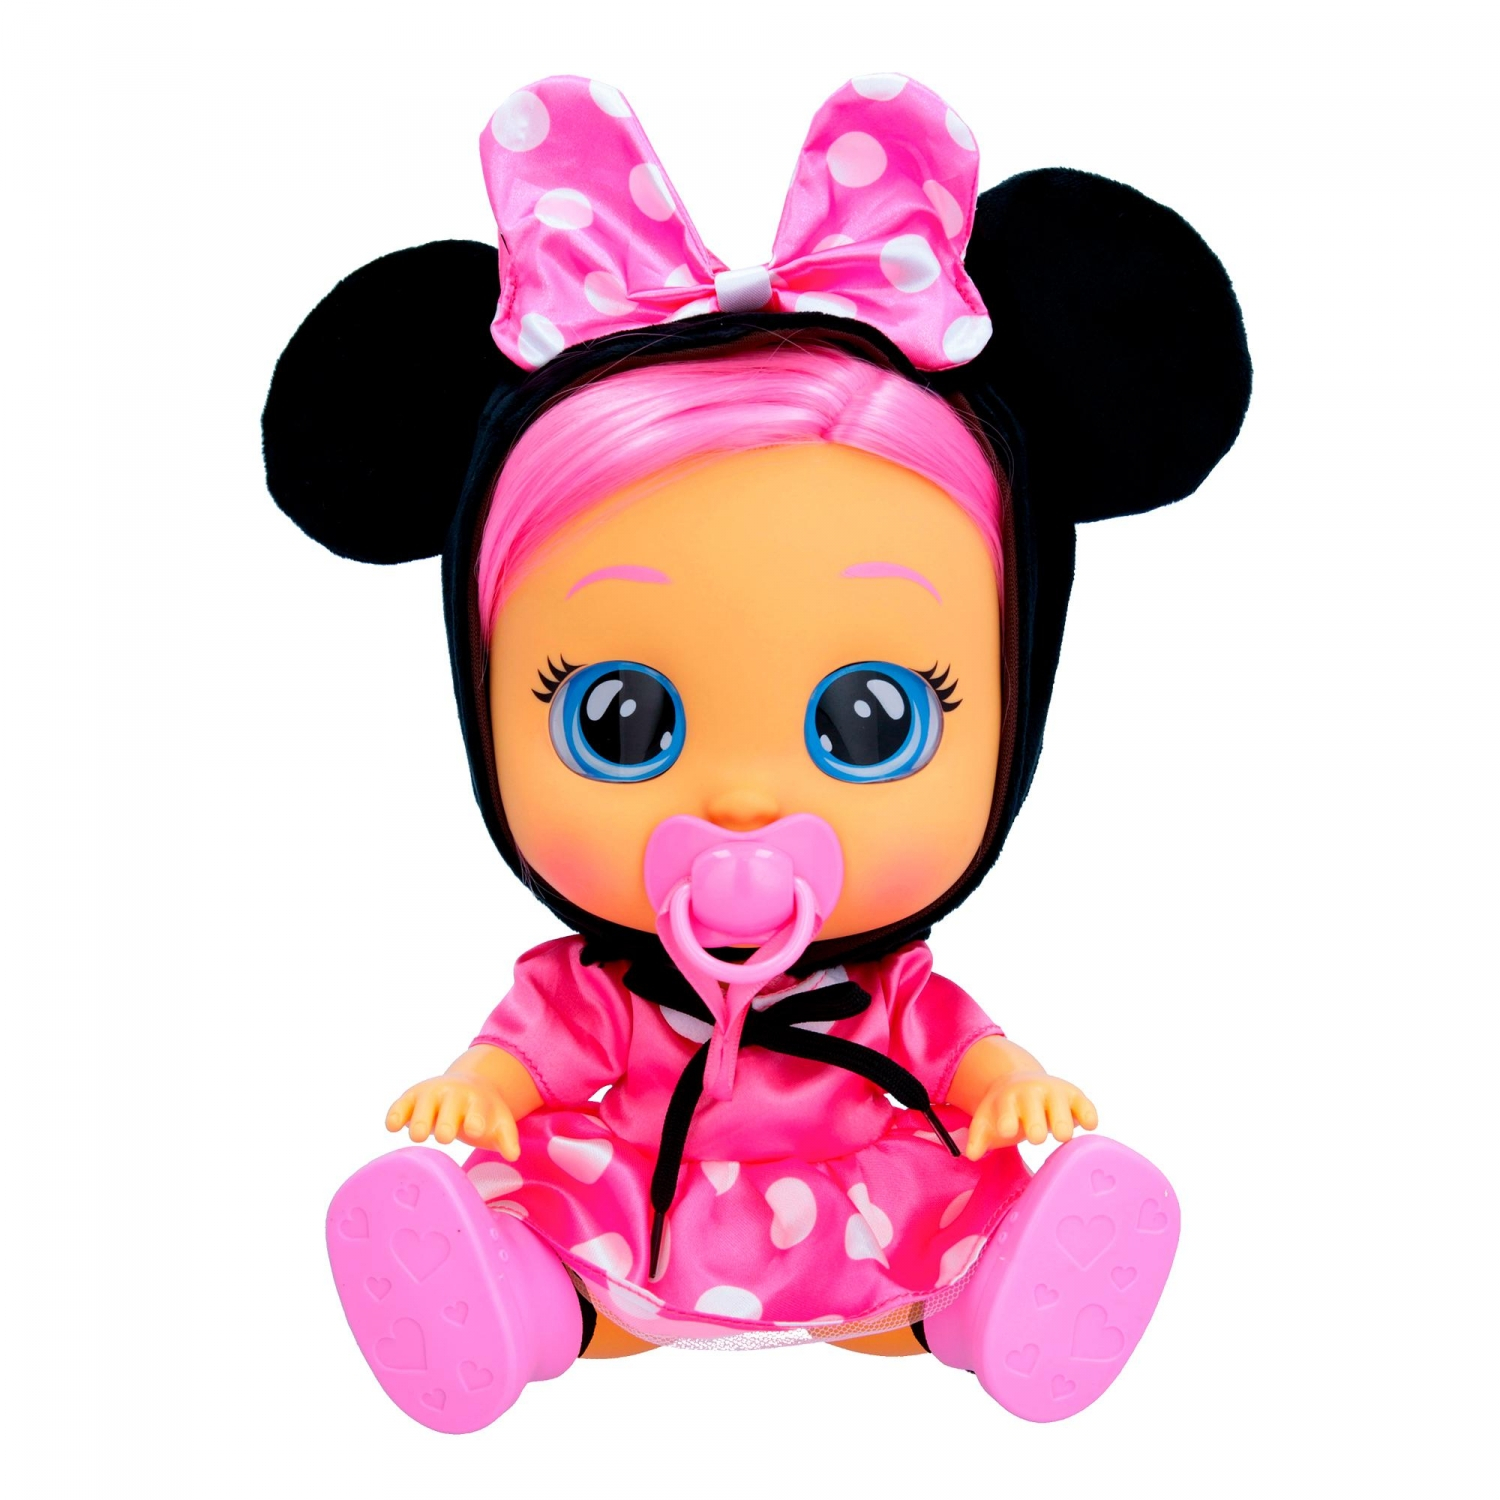 Bonecas: Boneca da Minnie e mais